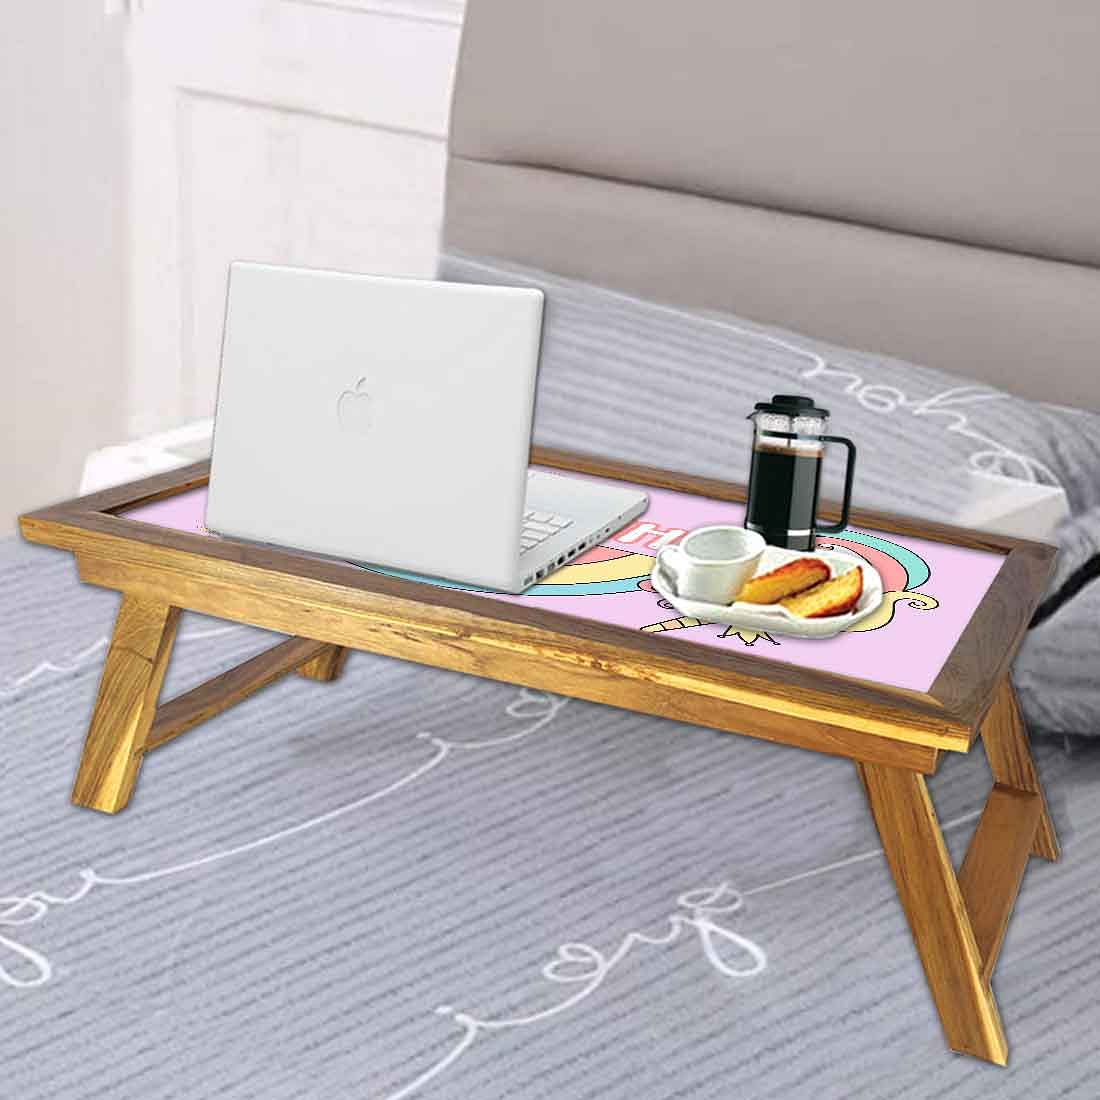 Customized Unicorn Laptop Desk - Unicorn with Rainbow Nutcase